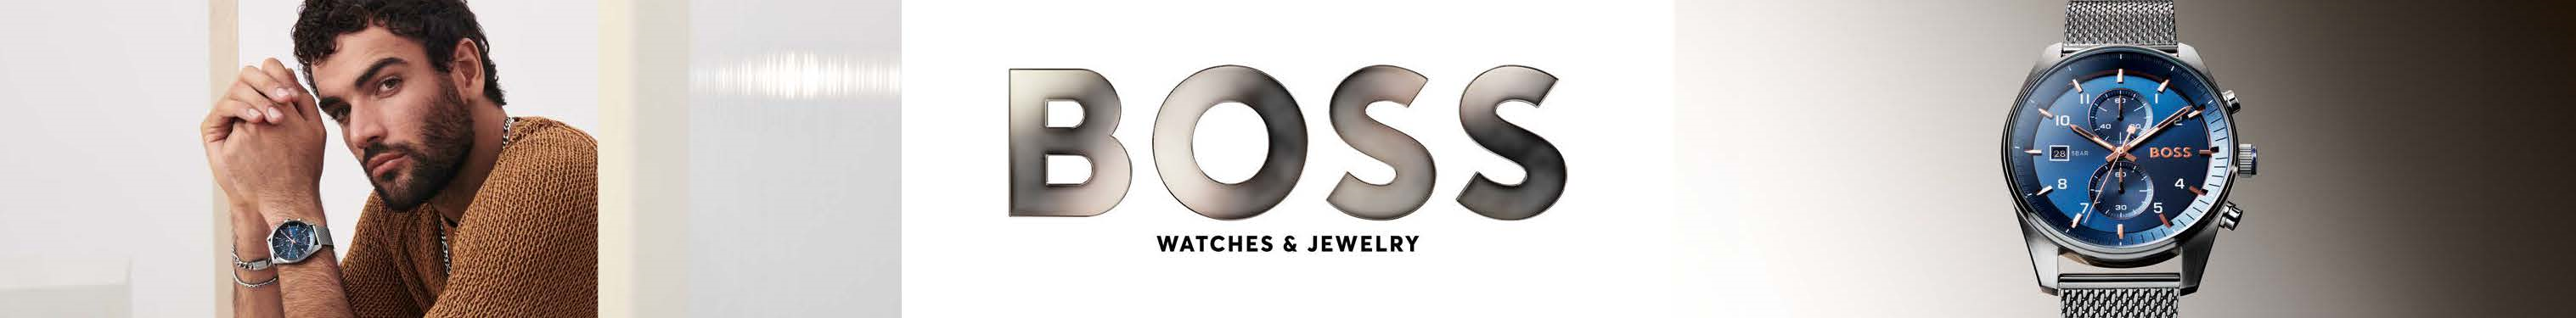 brand-boss-watches-1.jpg